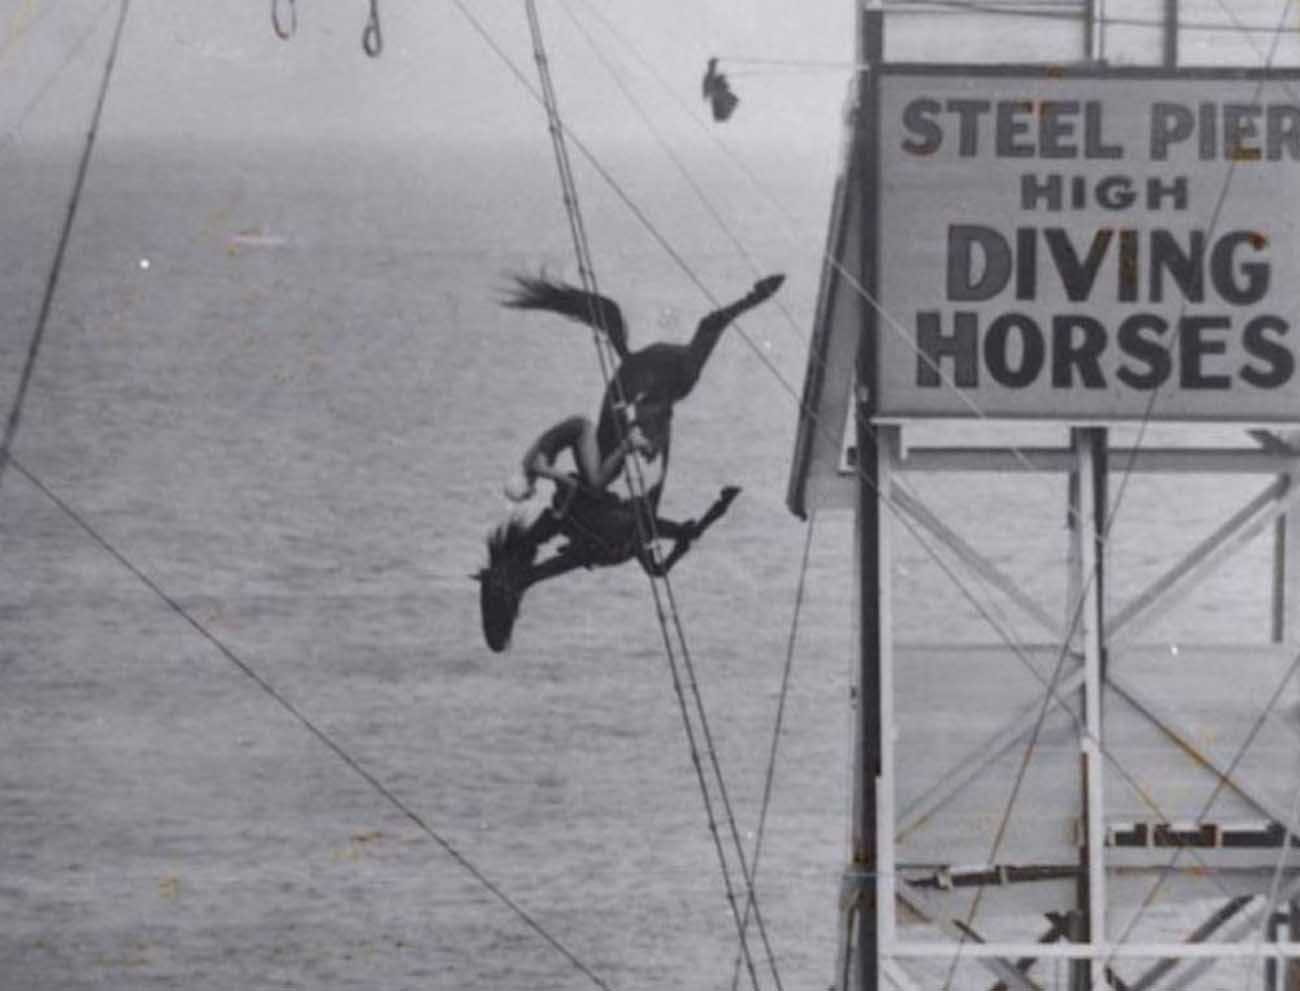 Ngựa lặn: Môn thể thao nguy hiểm ở thế kỷ 19